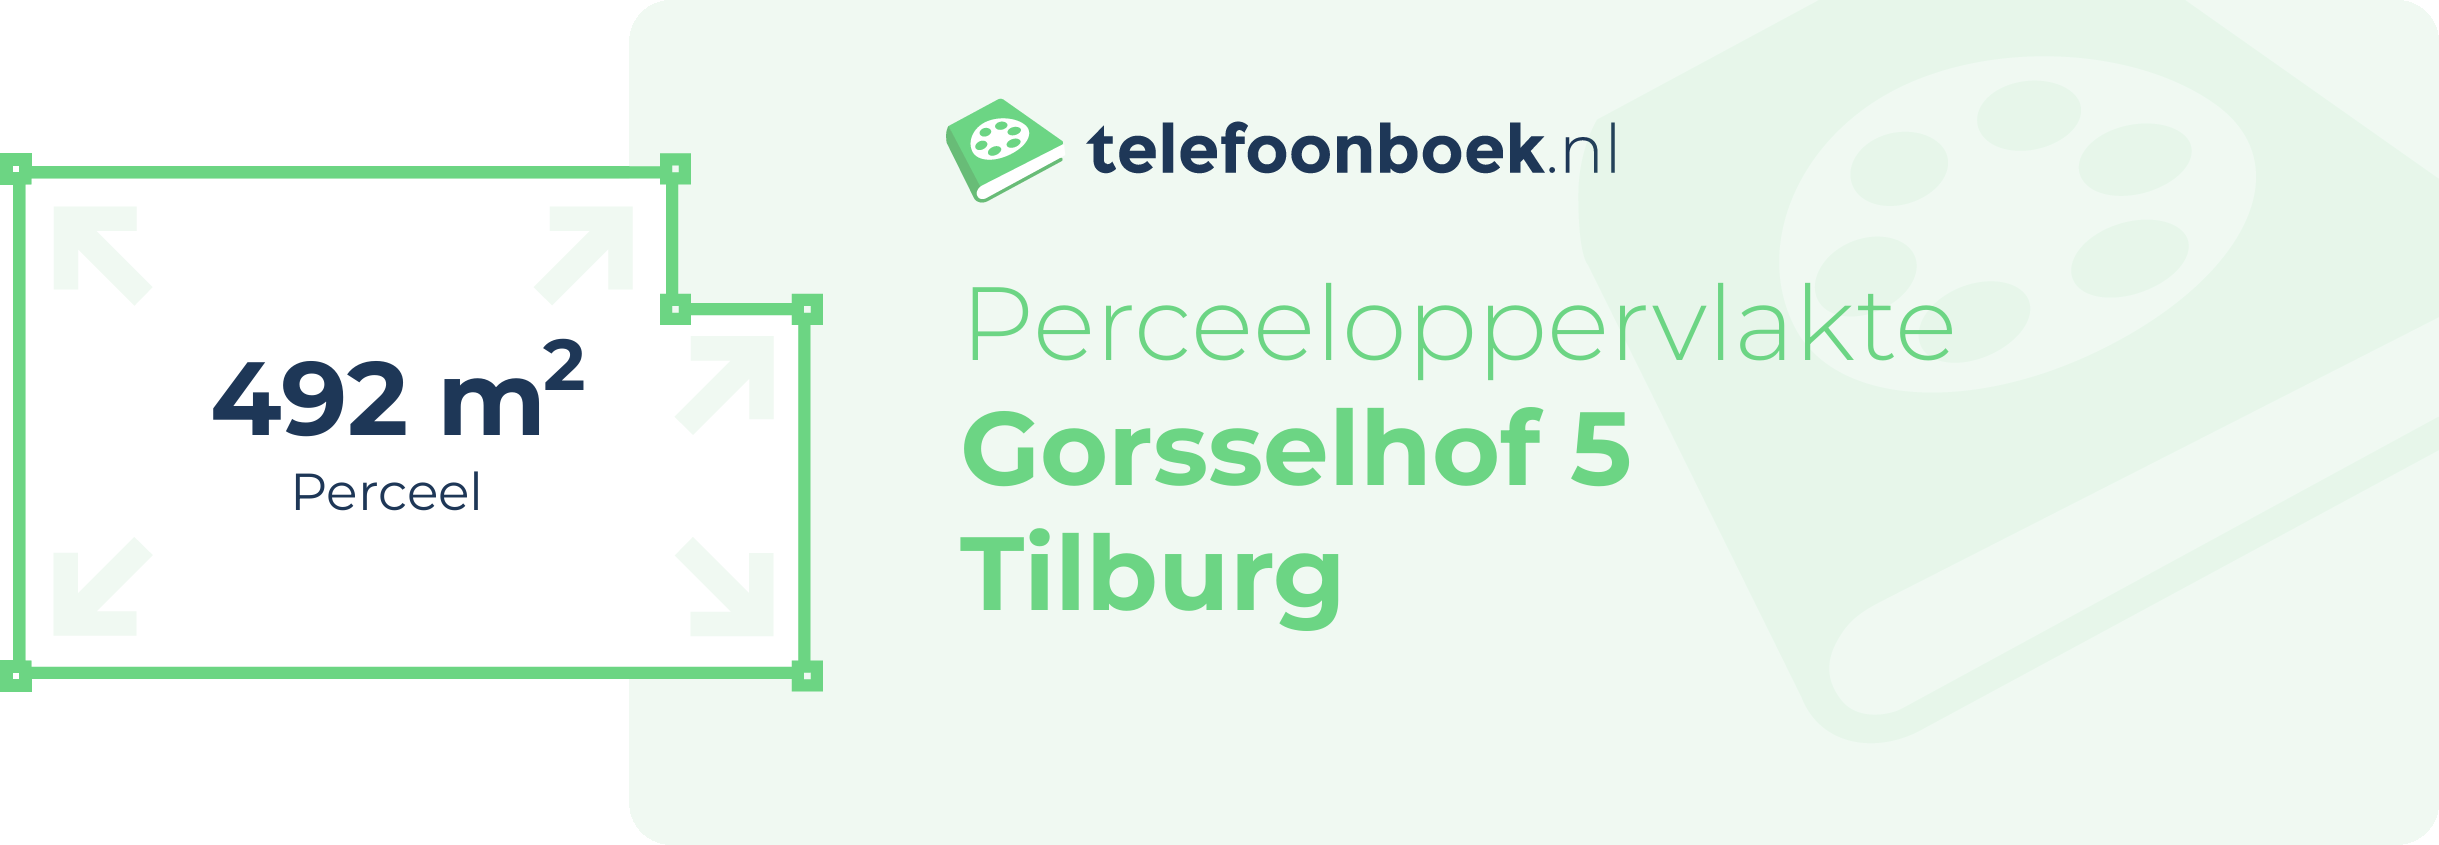 Perceeloppervlakte Gorsselhof 5 Tilburg